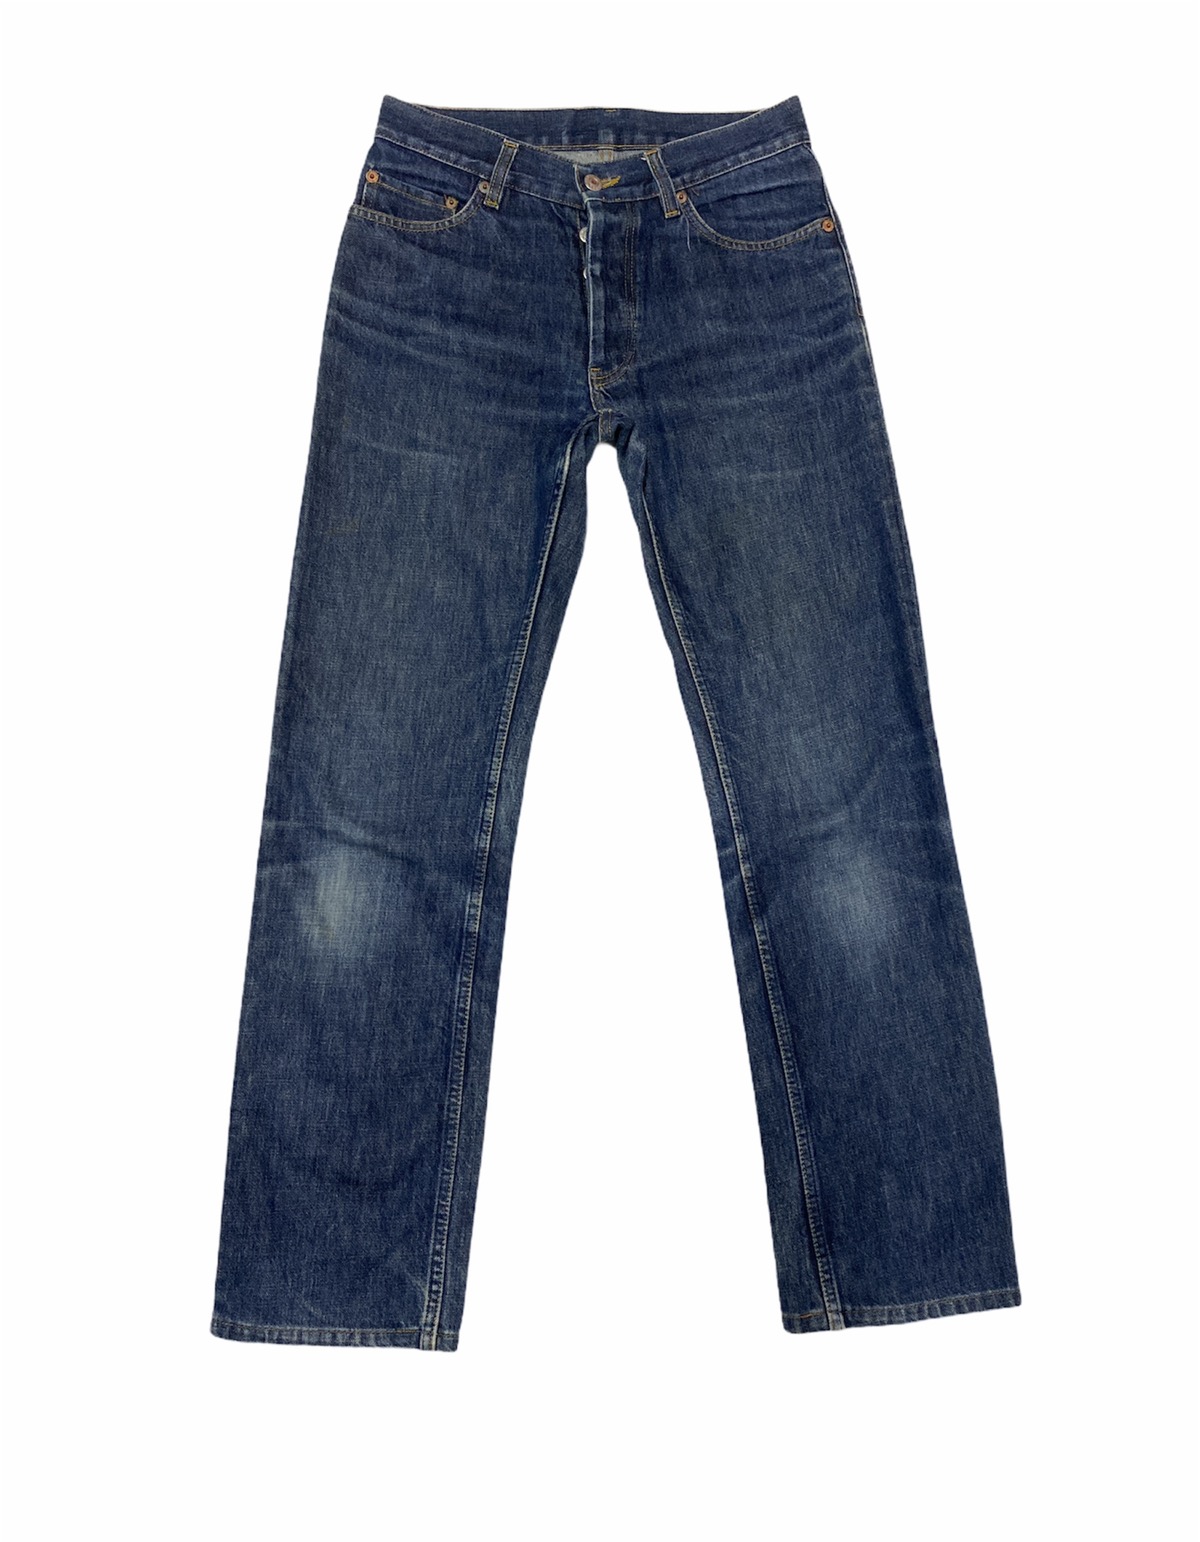 Vintage - 1998 Helmut Lang GTR Archive Classic Cut Raw Denim Jeans